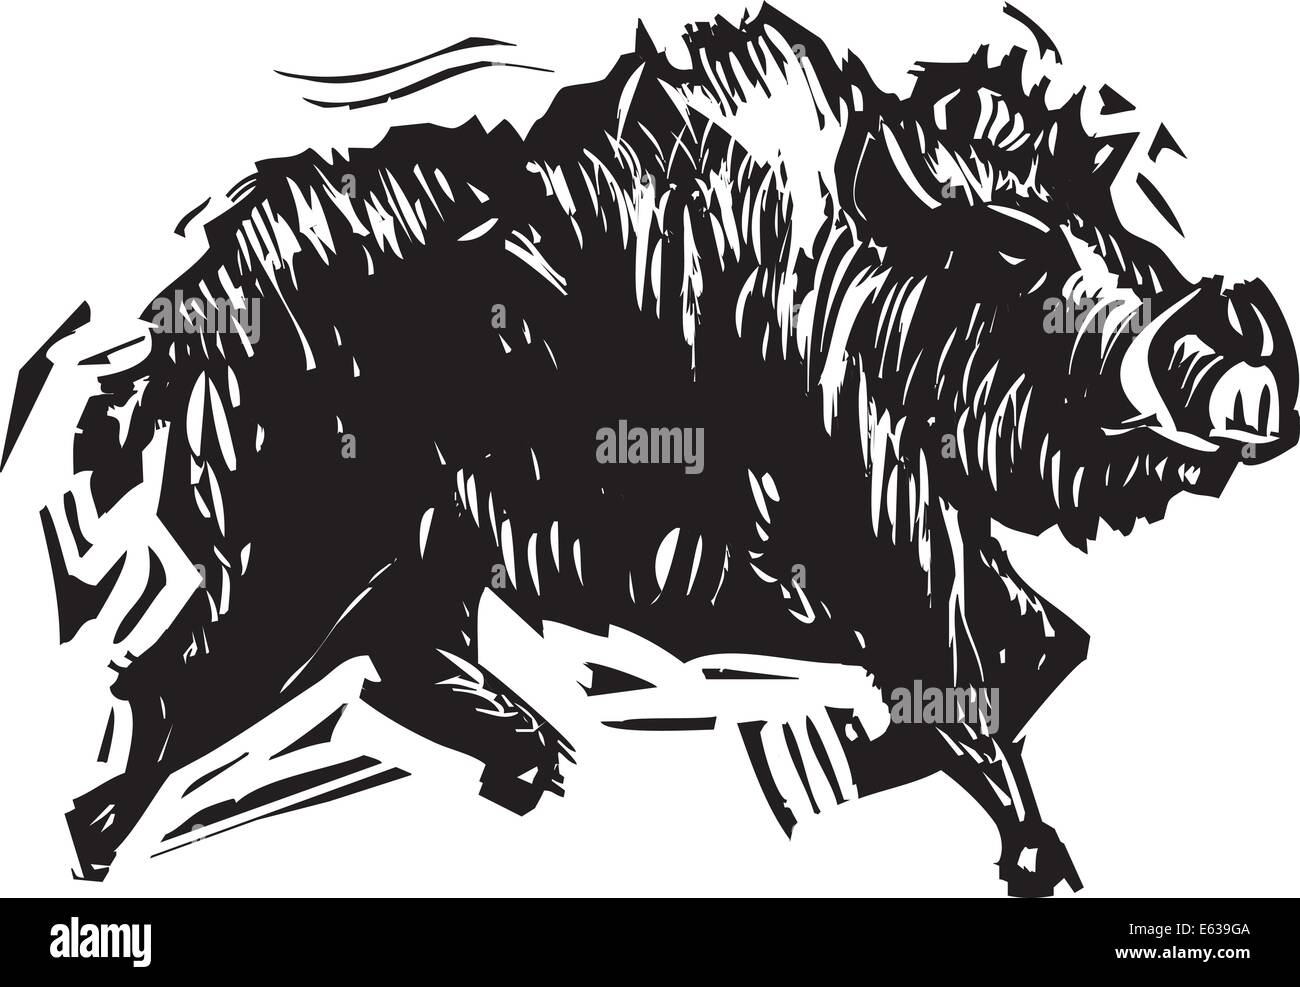 Holzschnitt Stil Bild von einem Wildschwein mit Stoßzähnen. Stock Vektor